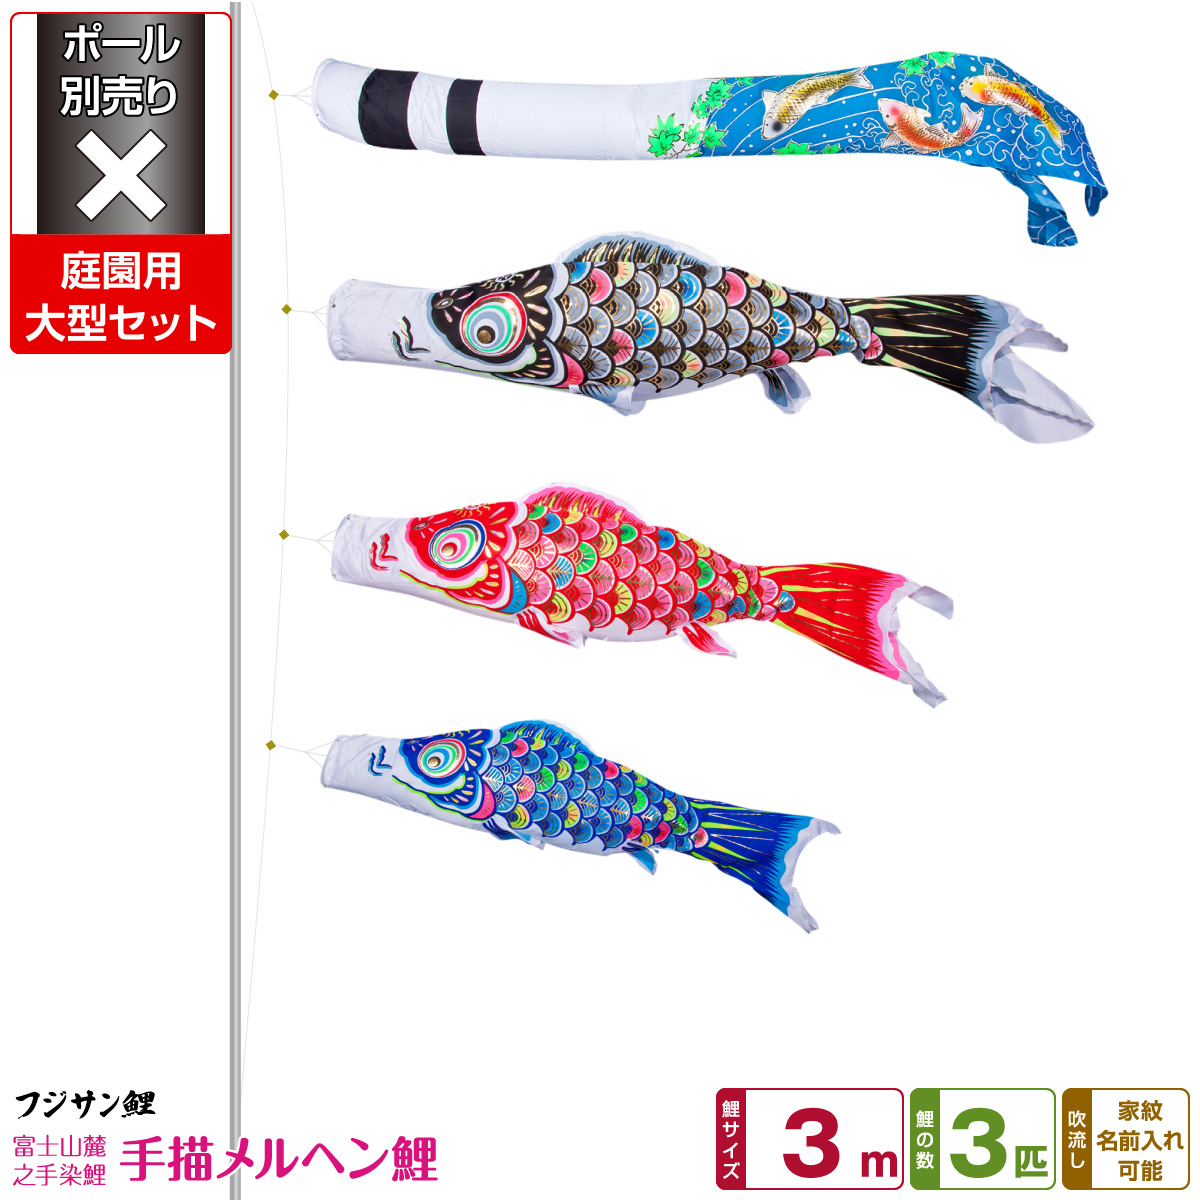 日本限定 庭園用 こいのぼり 鯉のぼり フジサン鯉 手描メルヘン鯉 3m 6